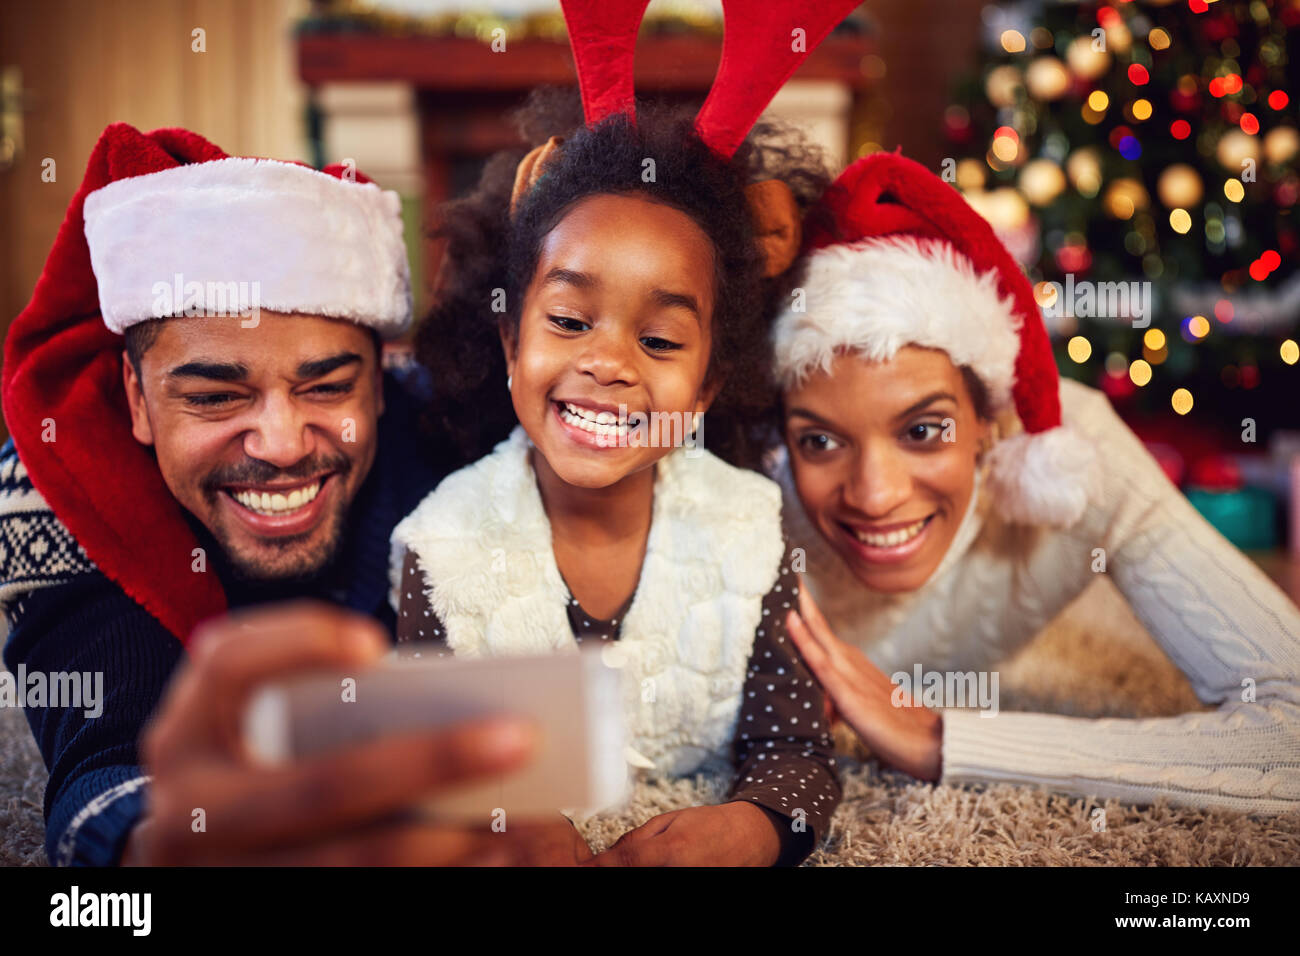 Lächelnd, Mutter, Vater und Tochter - Weihnachten selfie Stockfoto